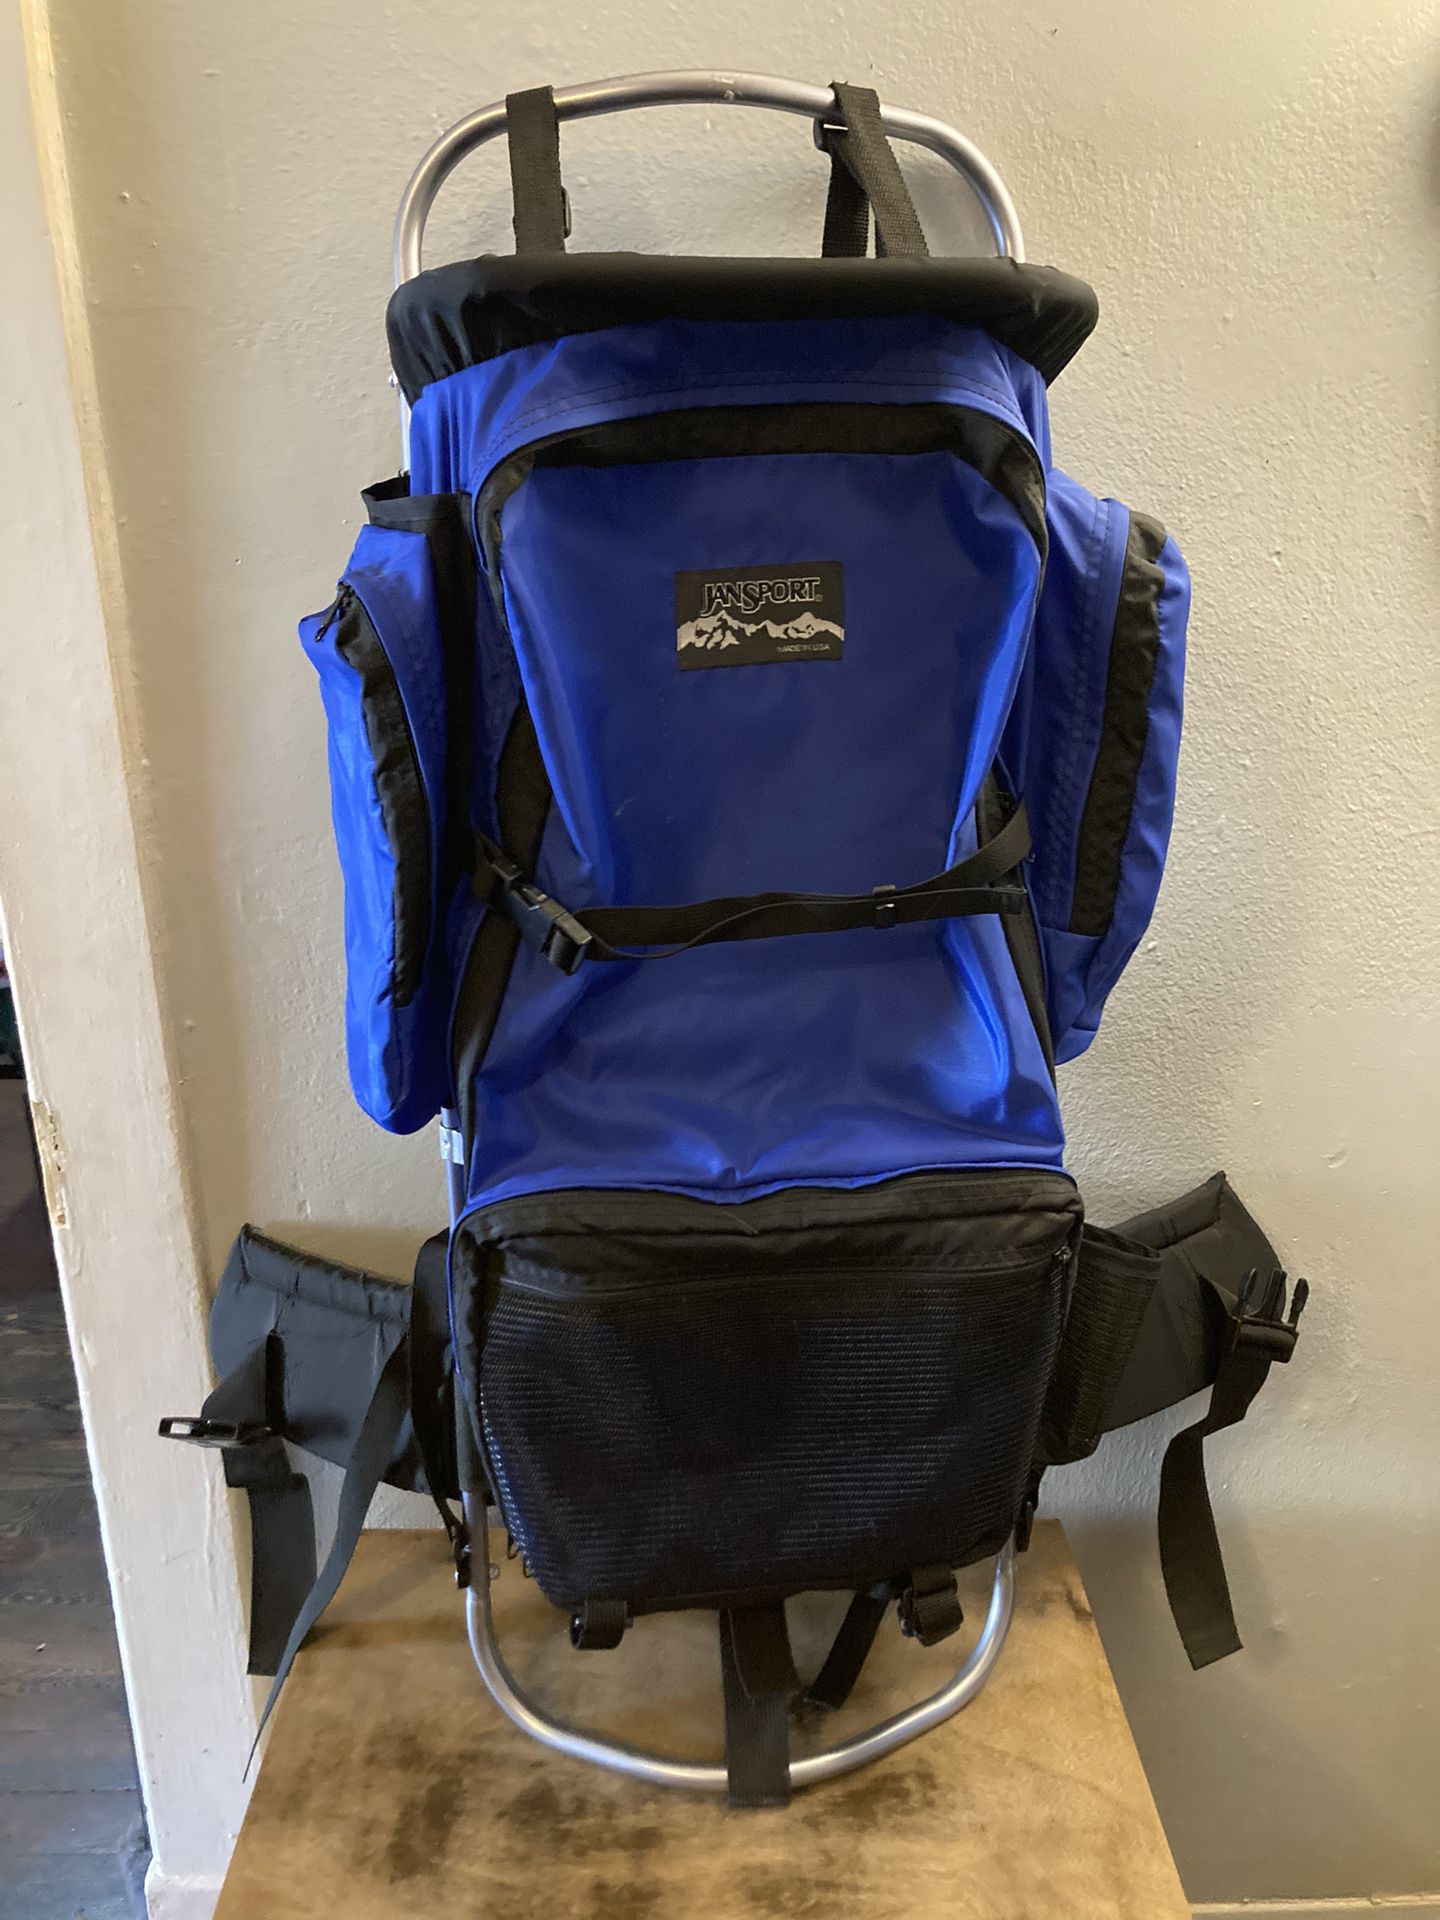 Jansport External Frame Backpacking Hiking Backpack